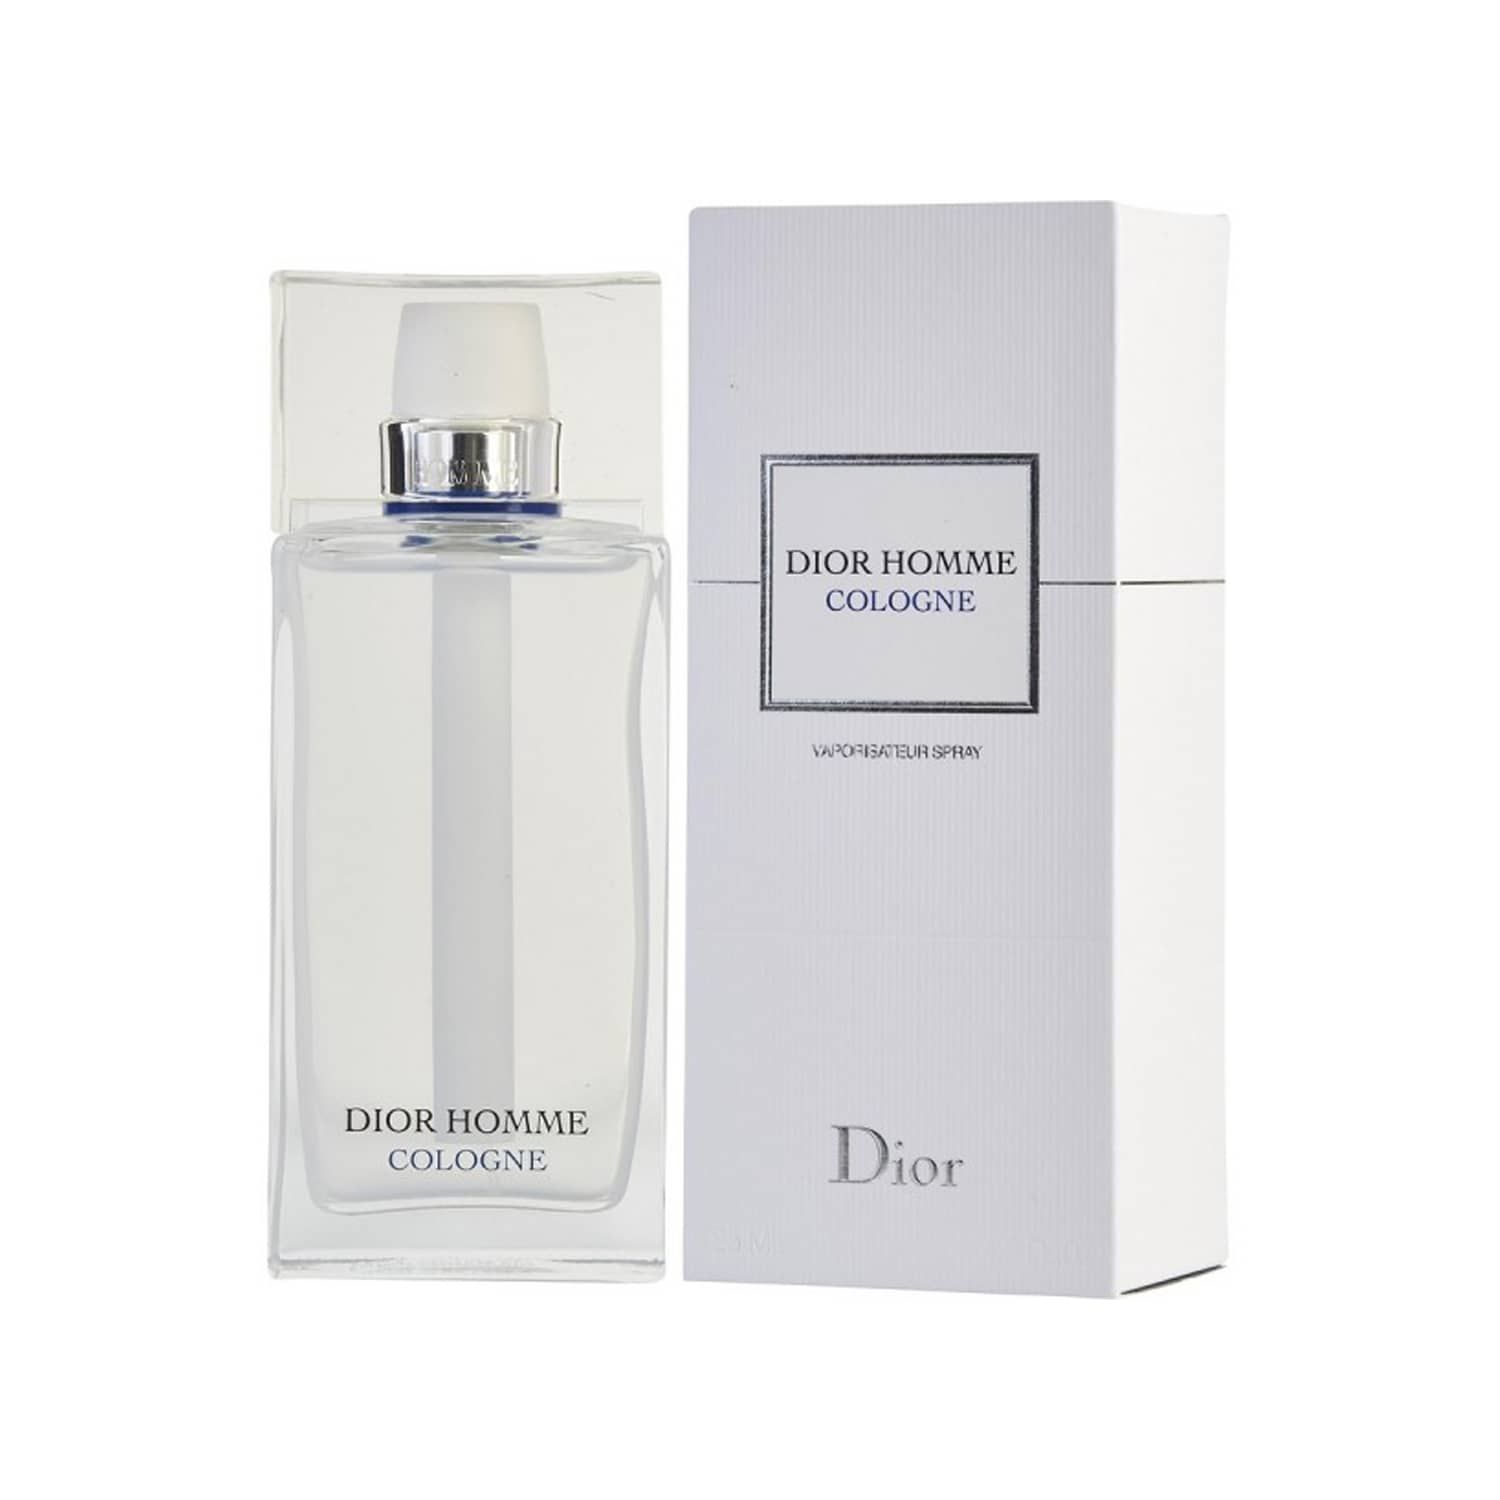 عطر مردانه دیور مدل Dior Homme Cologne 2013 حجم 125 میلی لیتر